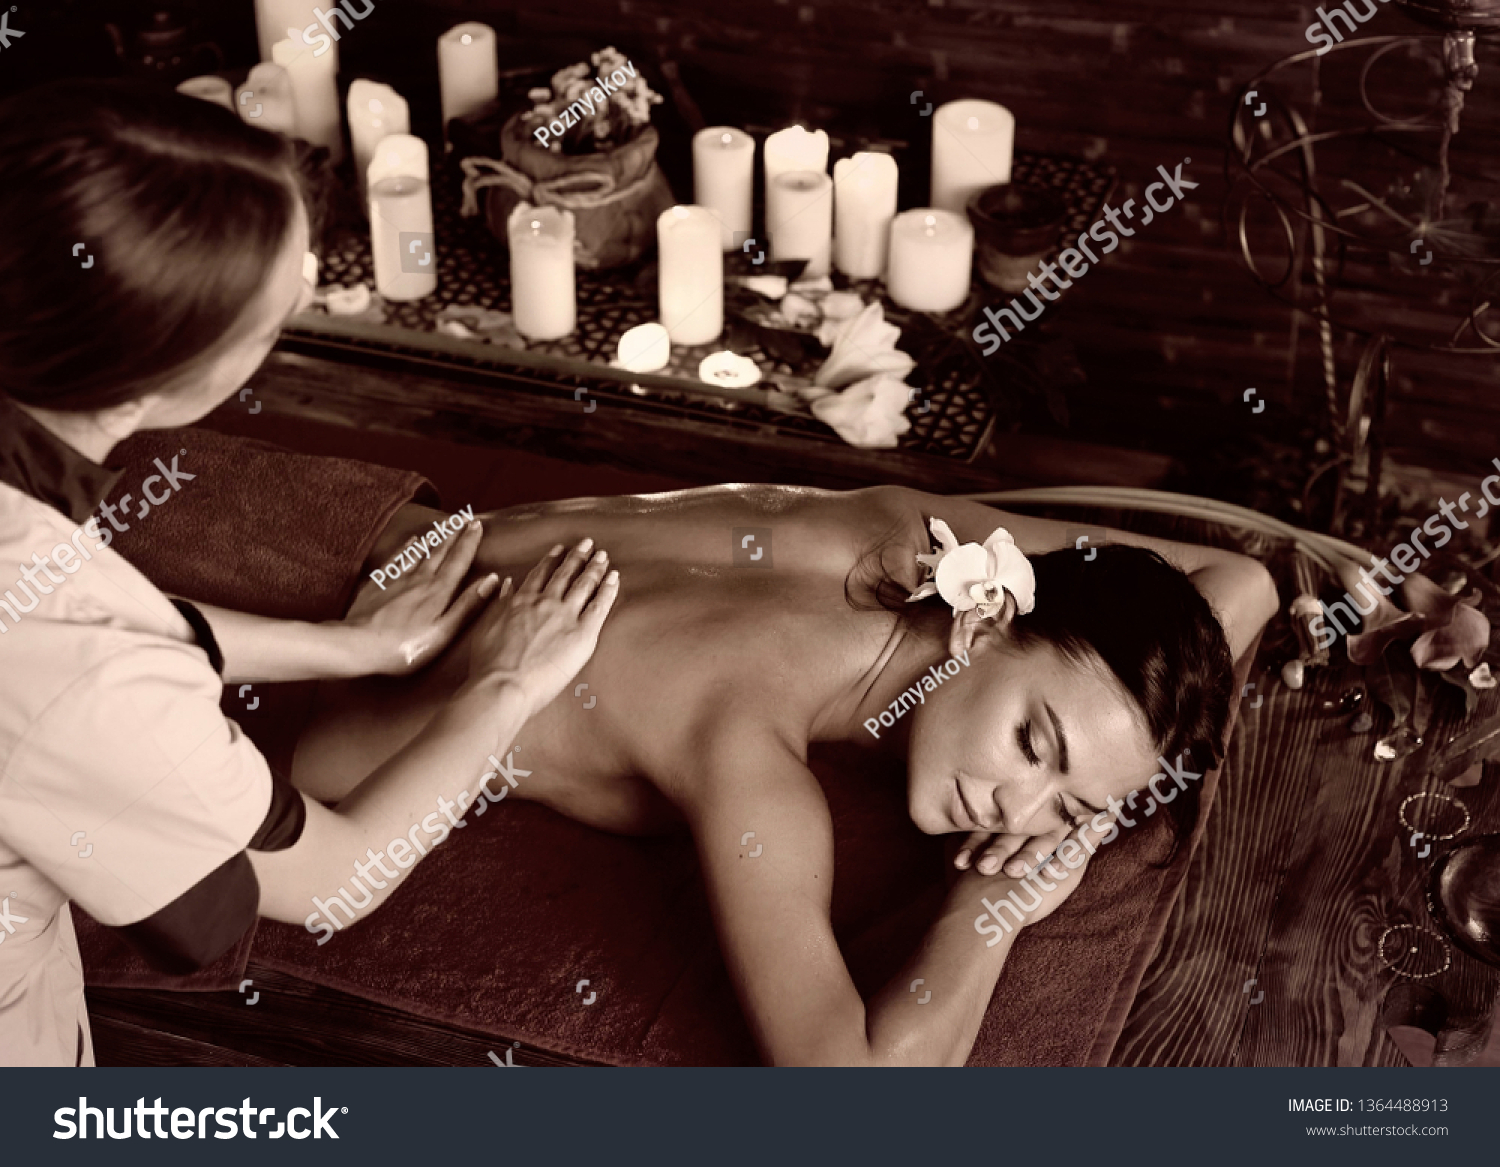 White Girl Massaging